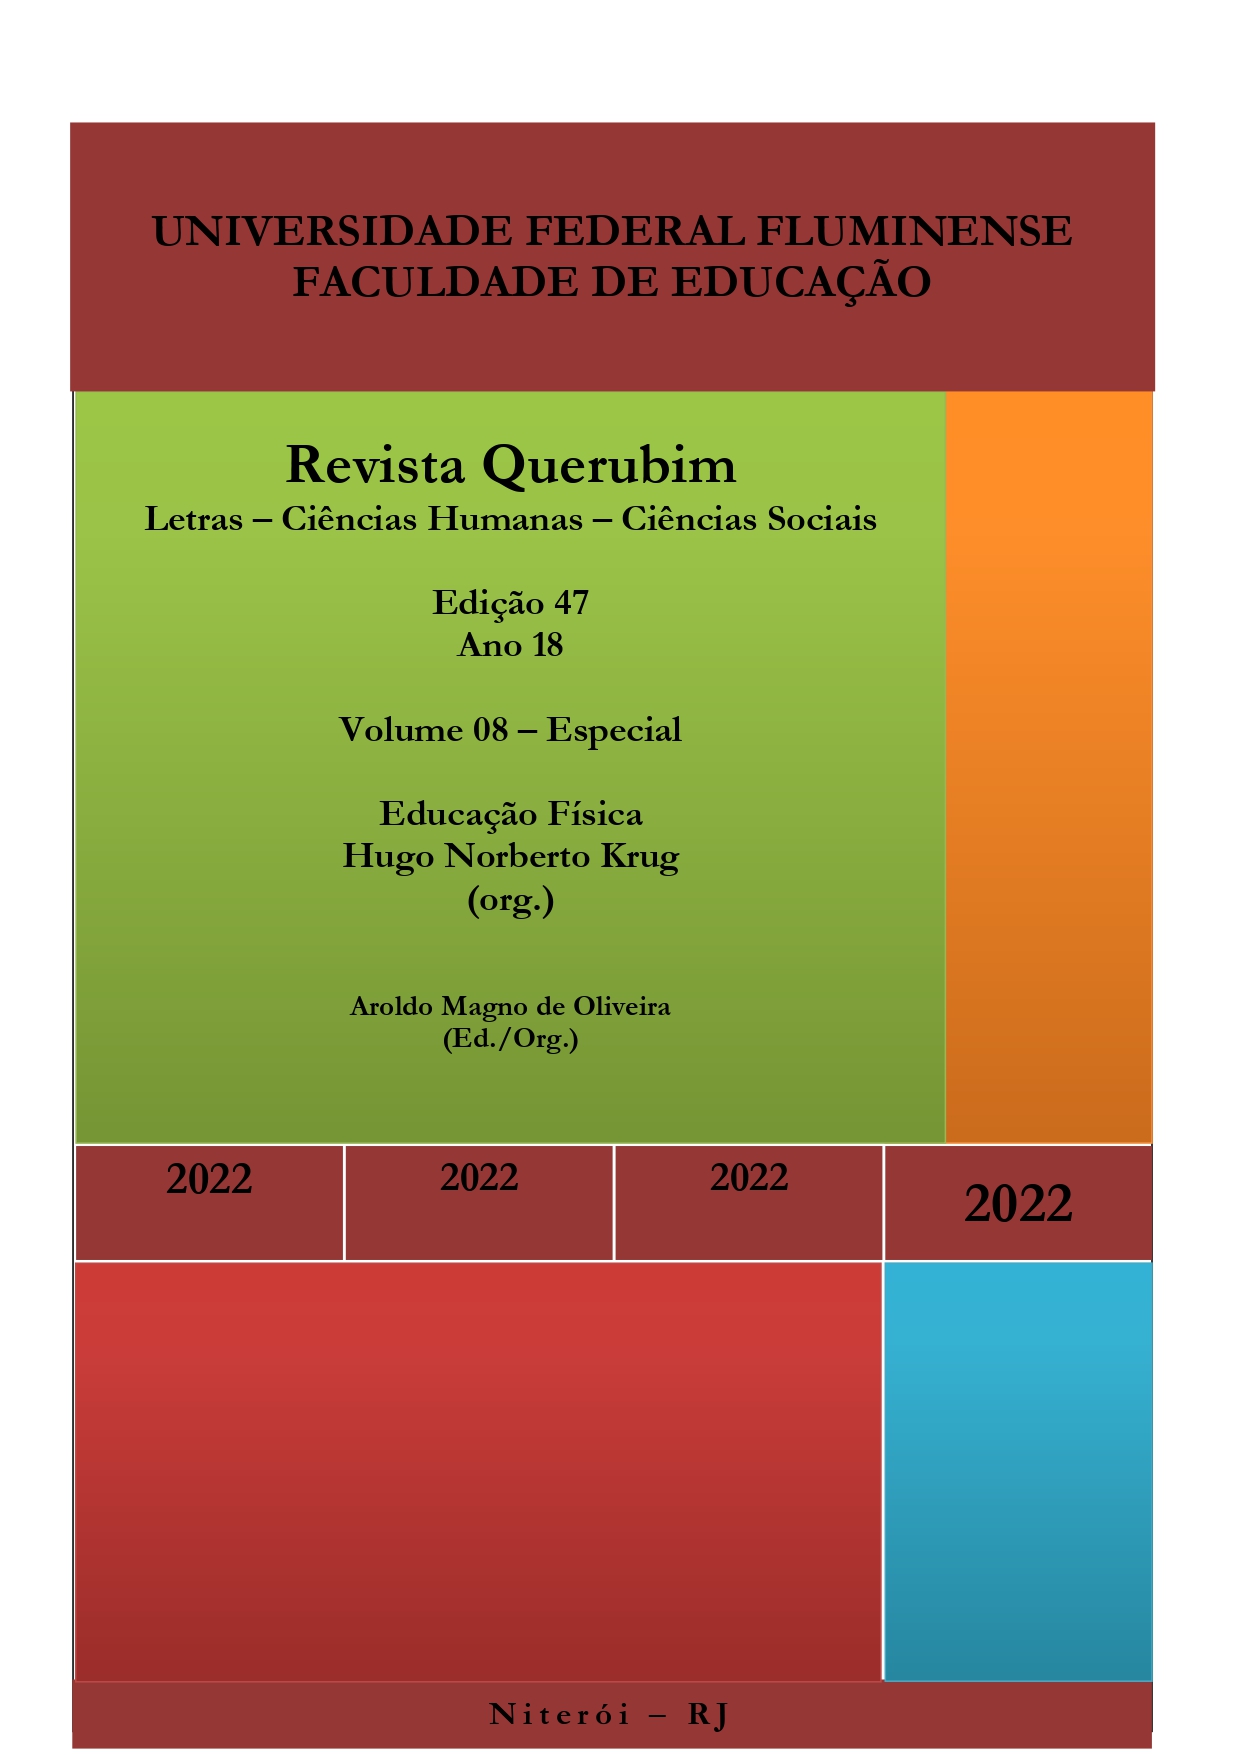 					Ver Vol. 8 N.º 47 (2022): Revista Querubim 47 v 8 e
				